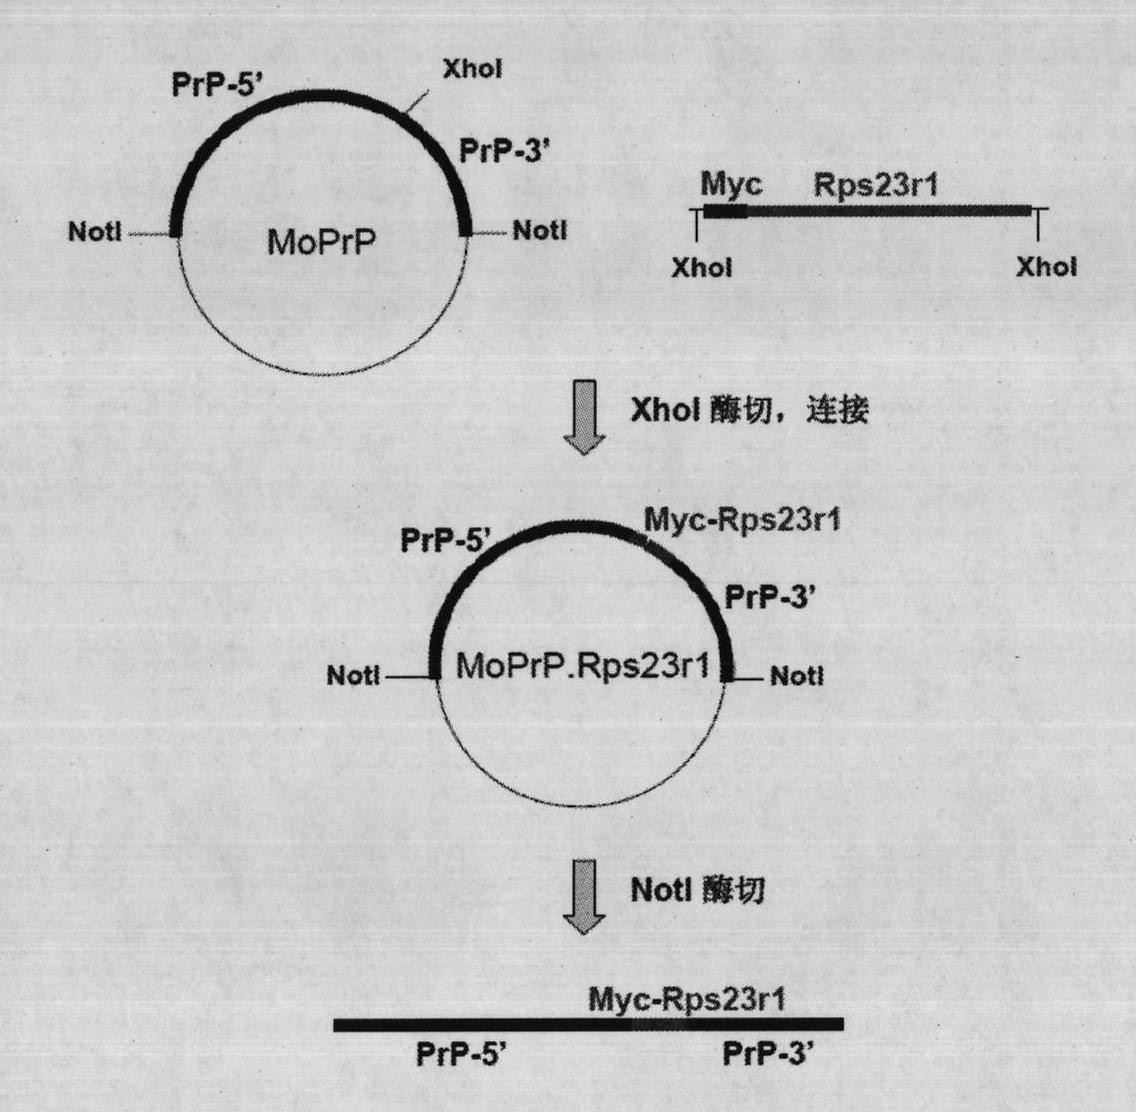 Construction method for transgene mouse model of overexpressing Rps23r1 gene